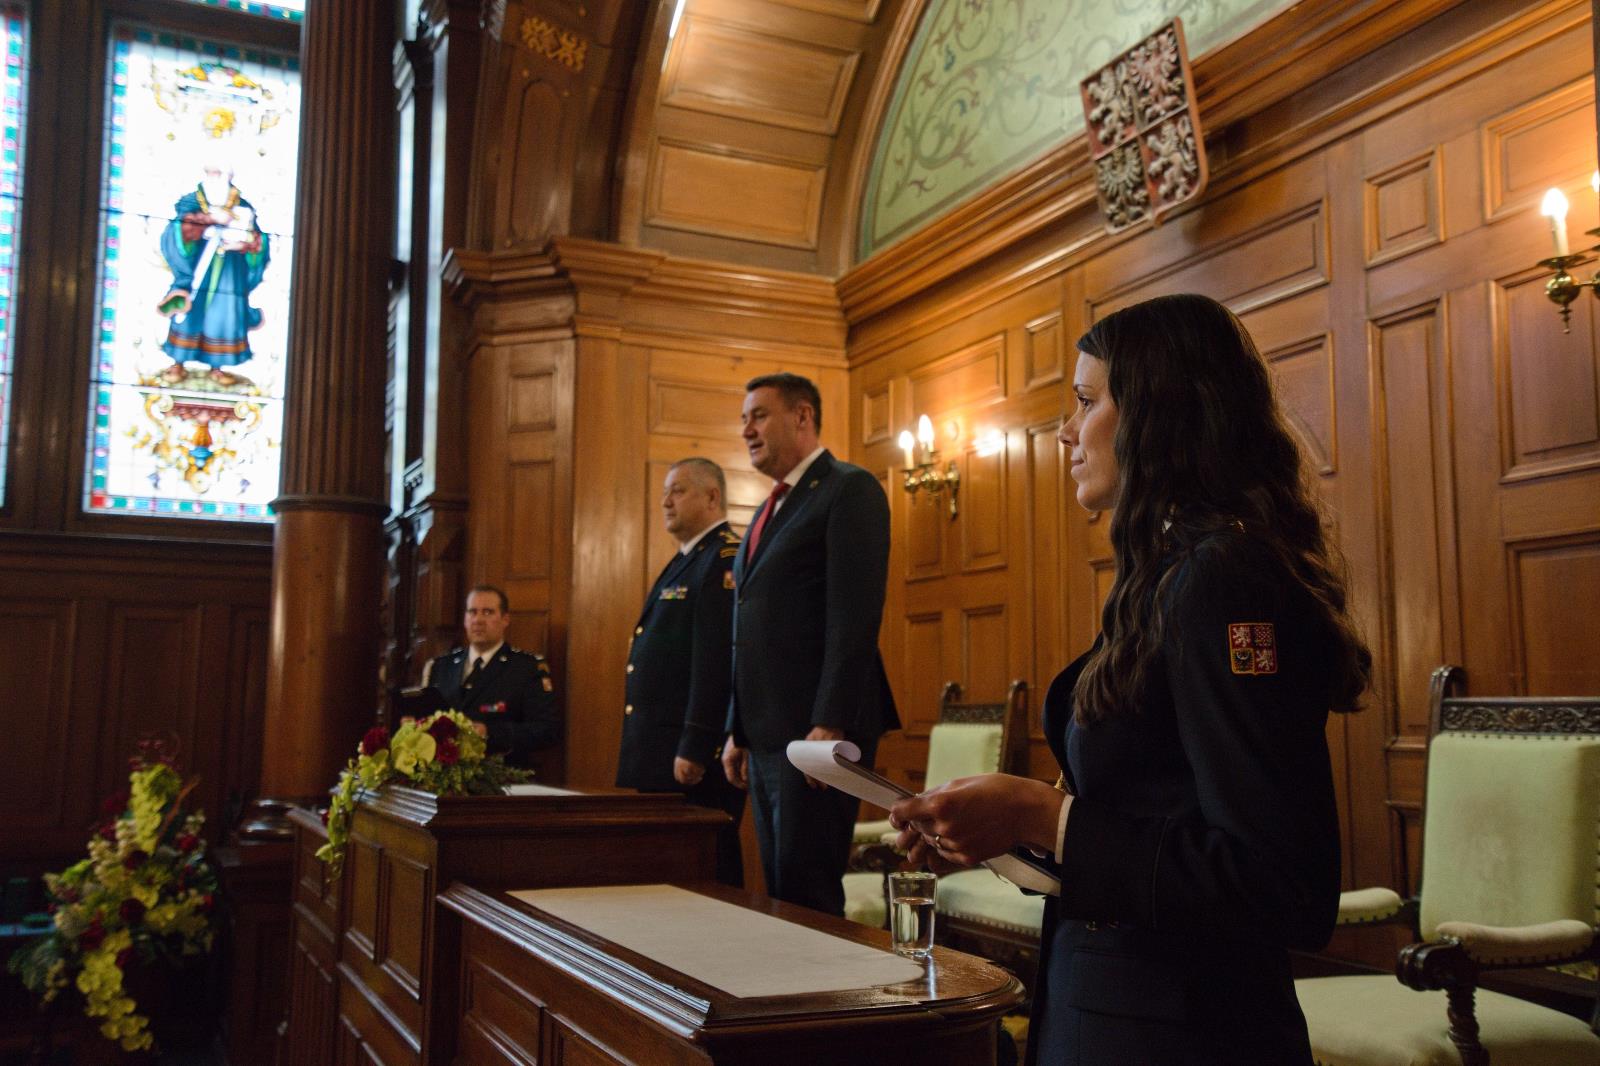 Ceremoniál předávání medailí HZS ČR se i letos uskutečnil v reprezentativních prostorách liberecké radnice